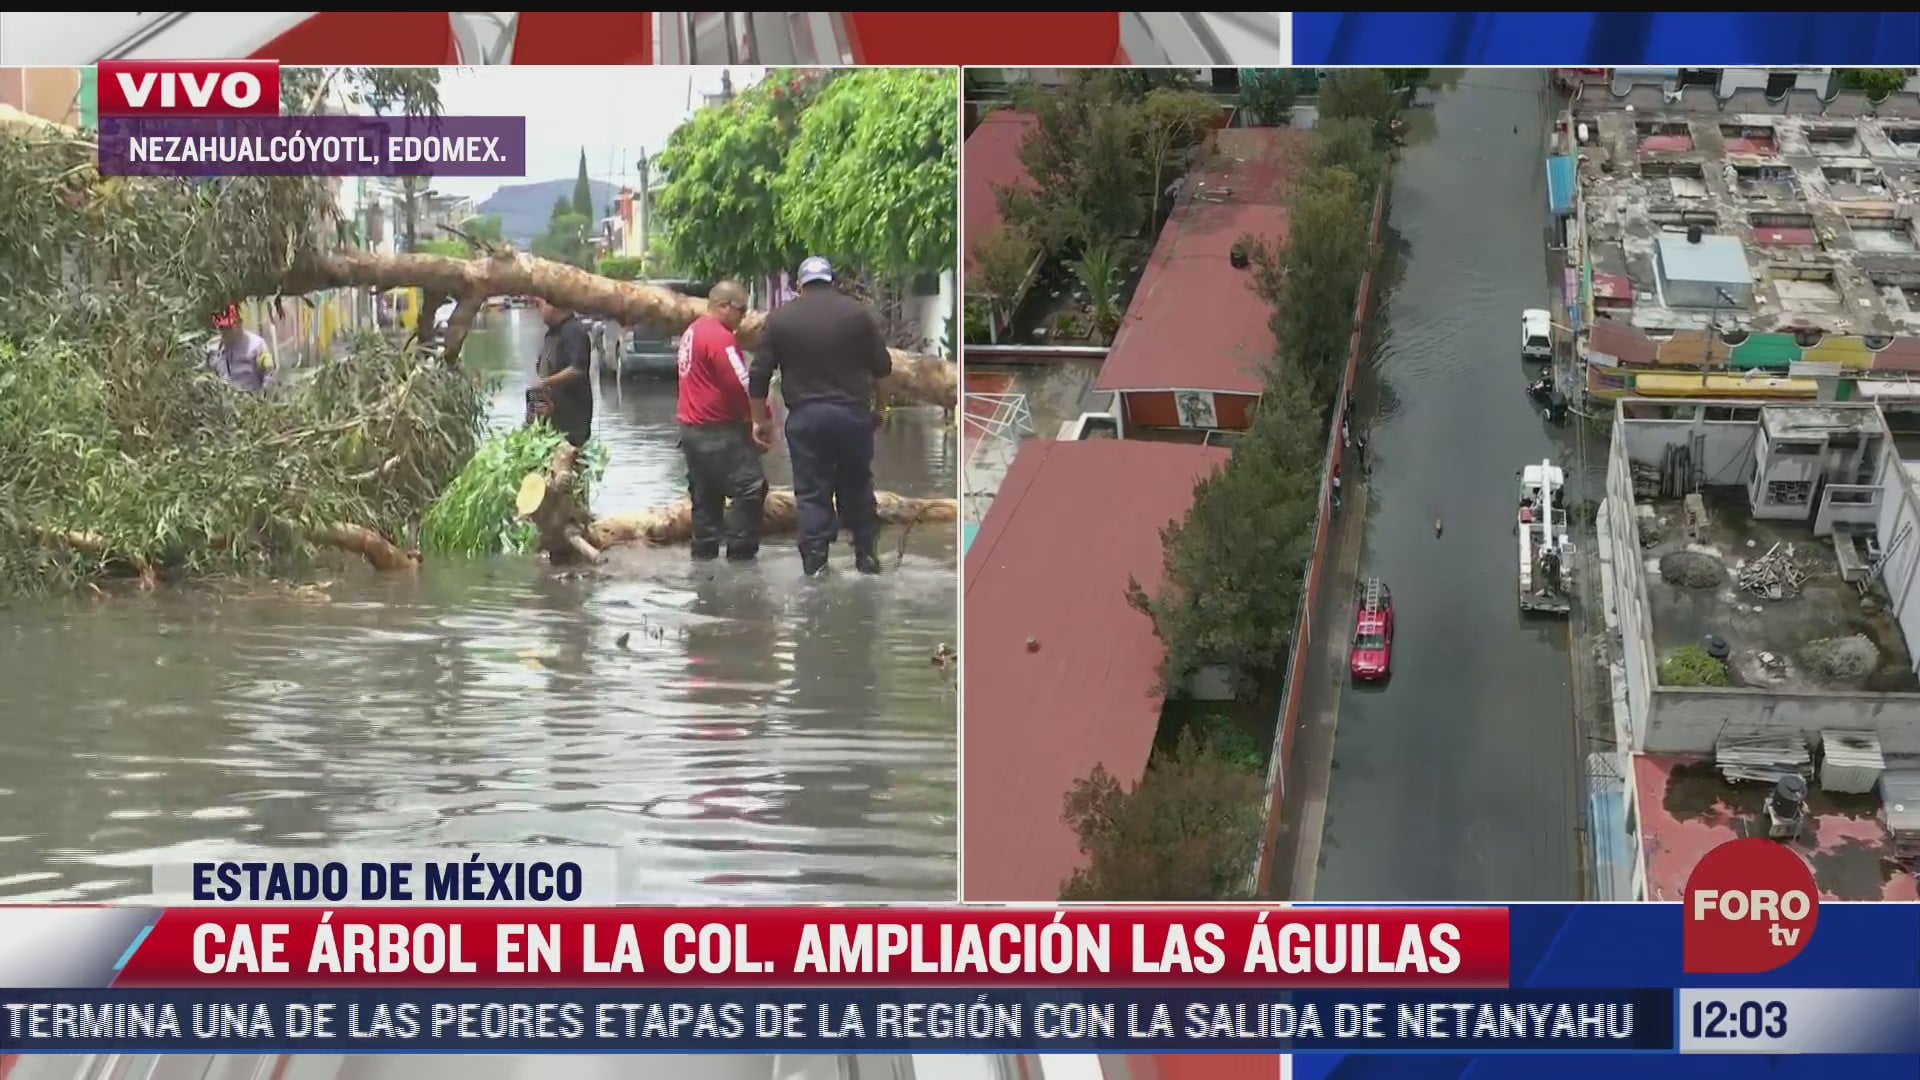 cae arbol de 8 metros de altura en plena inundacion en nezahualcoyotl